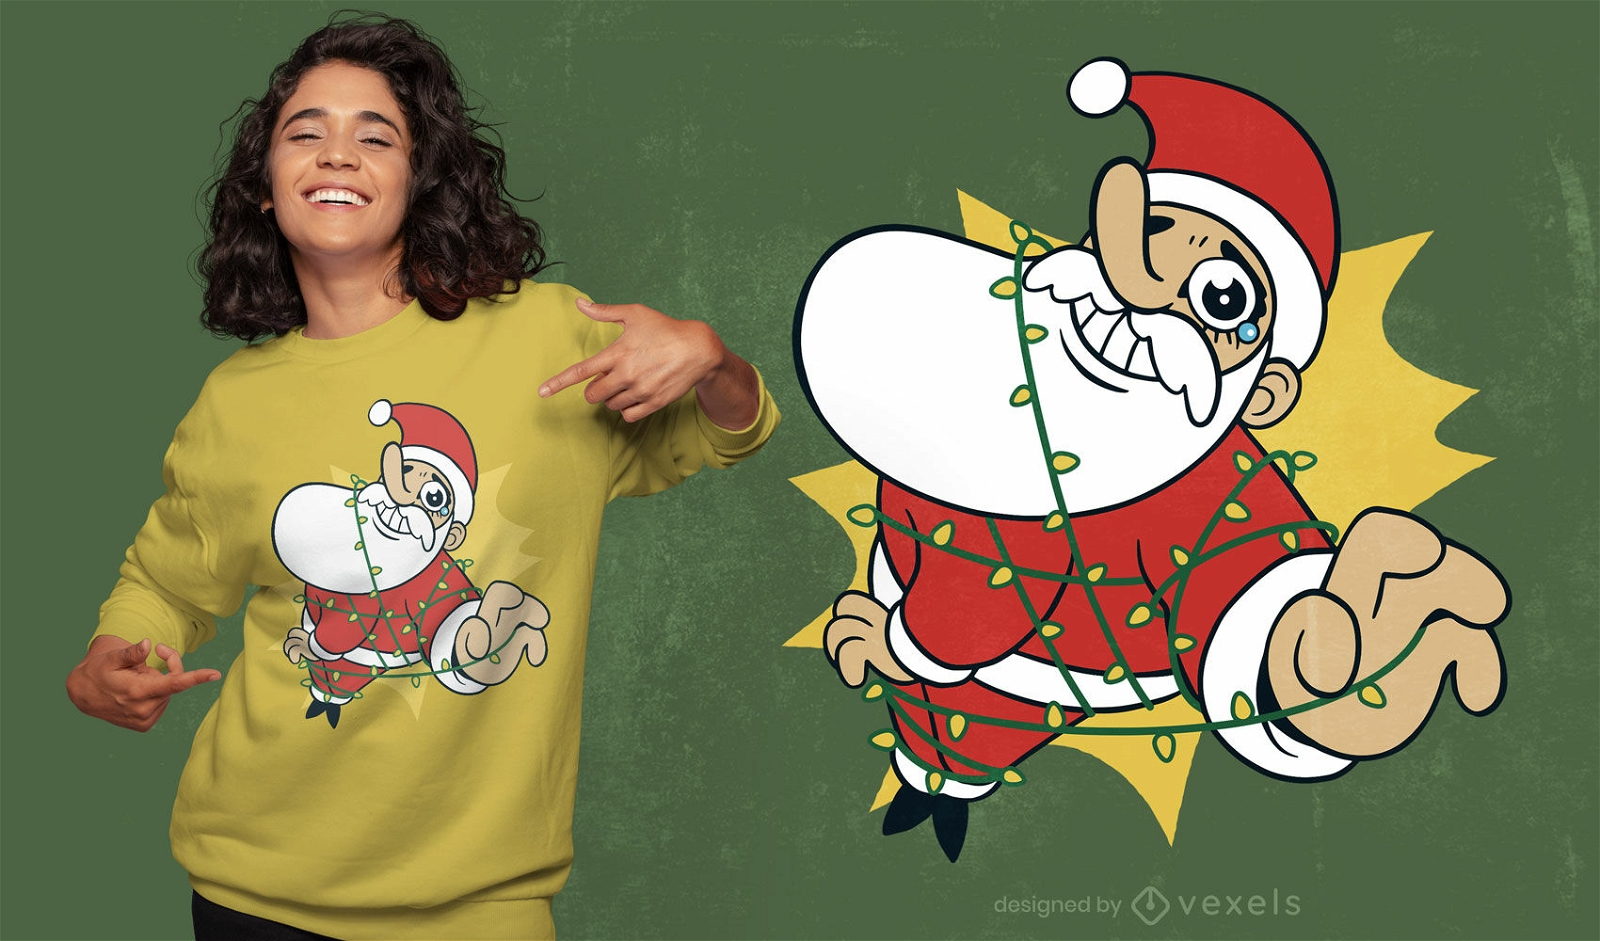 Papai Noel preso no design de camisetas com luzes de natal